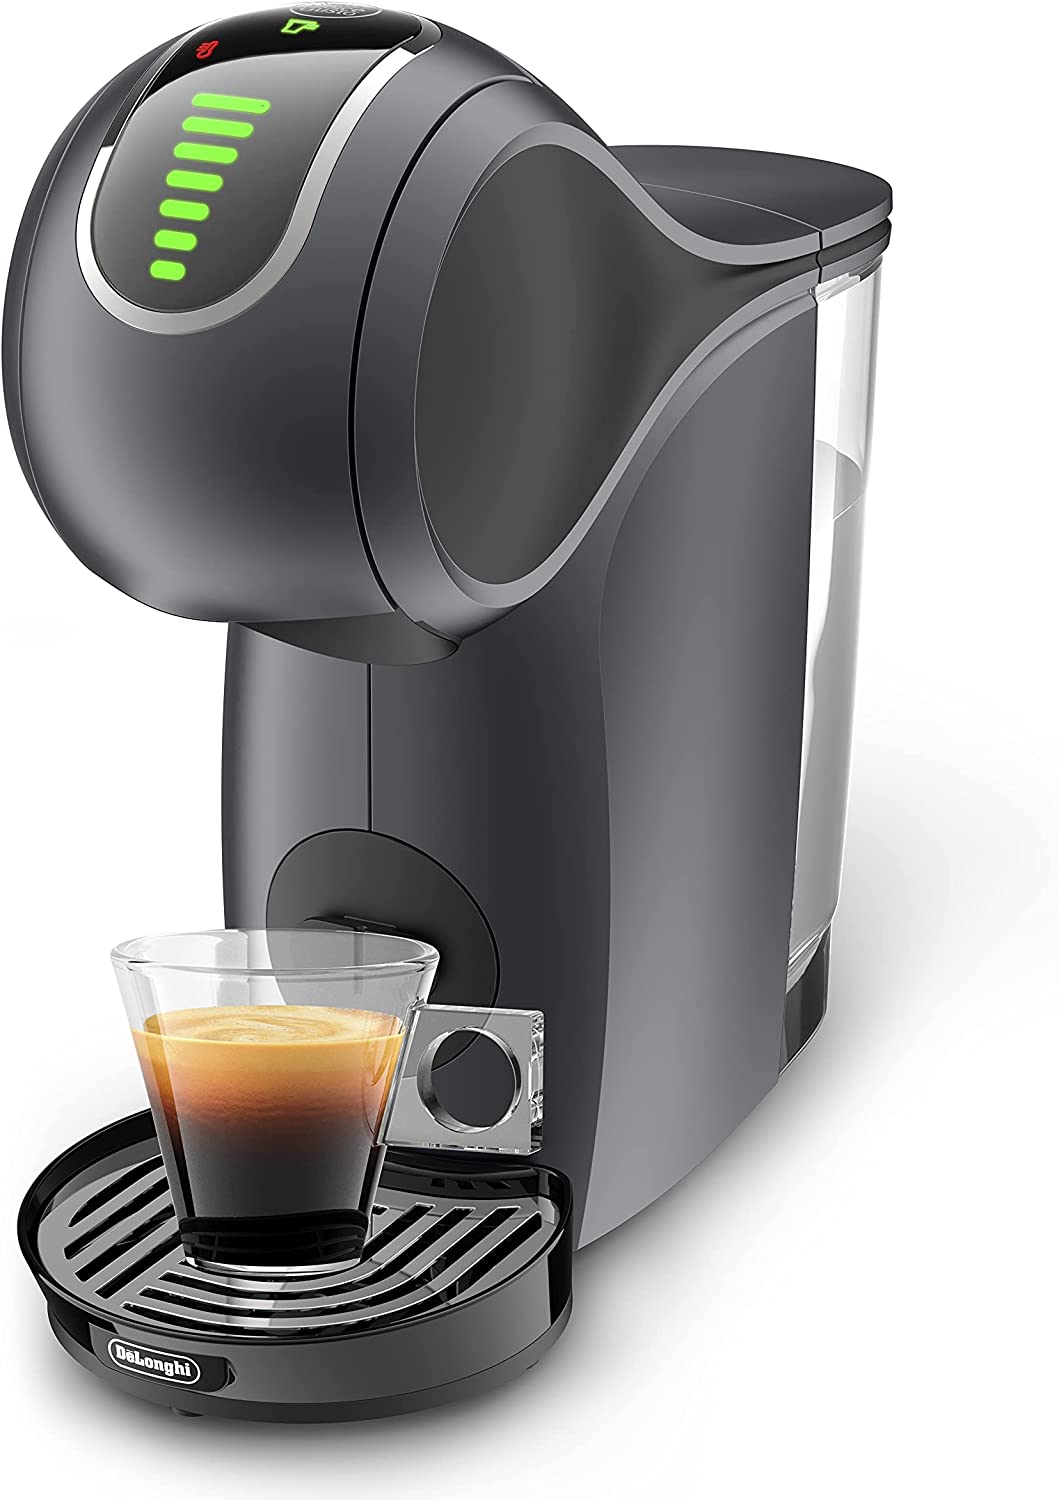 DeLonghi De\'longhi Nescafe Dolce Gusto, Genio S Touch EDG426.GY Capsule Coffee Maker, Espresso, Cappuccino, Latte and More, Grey